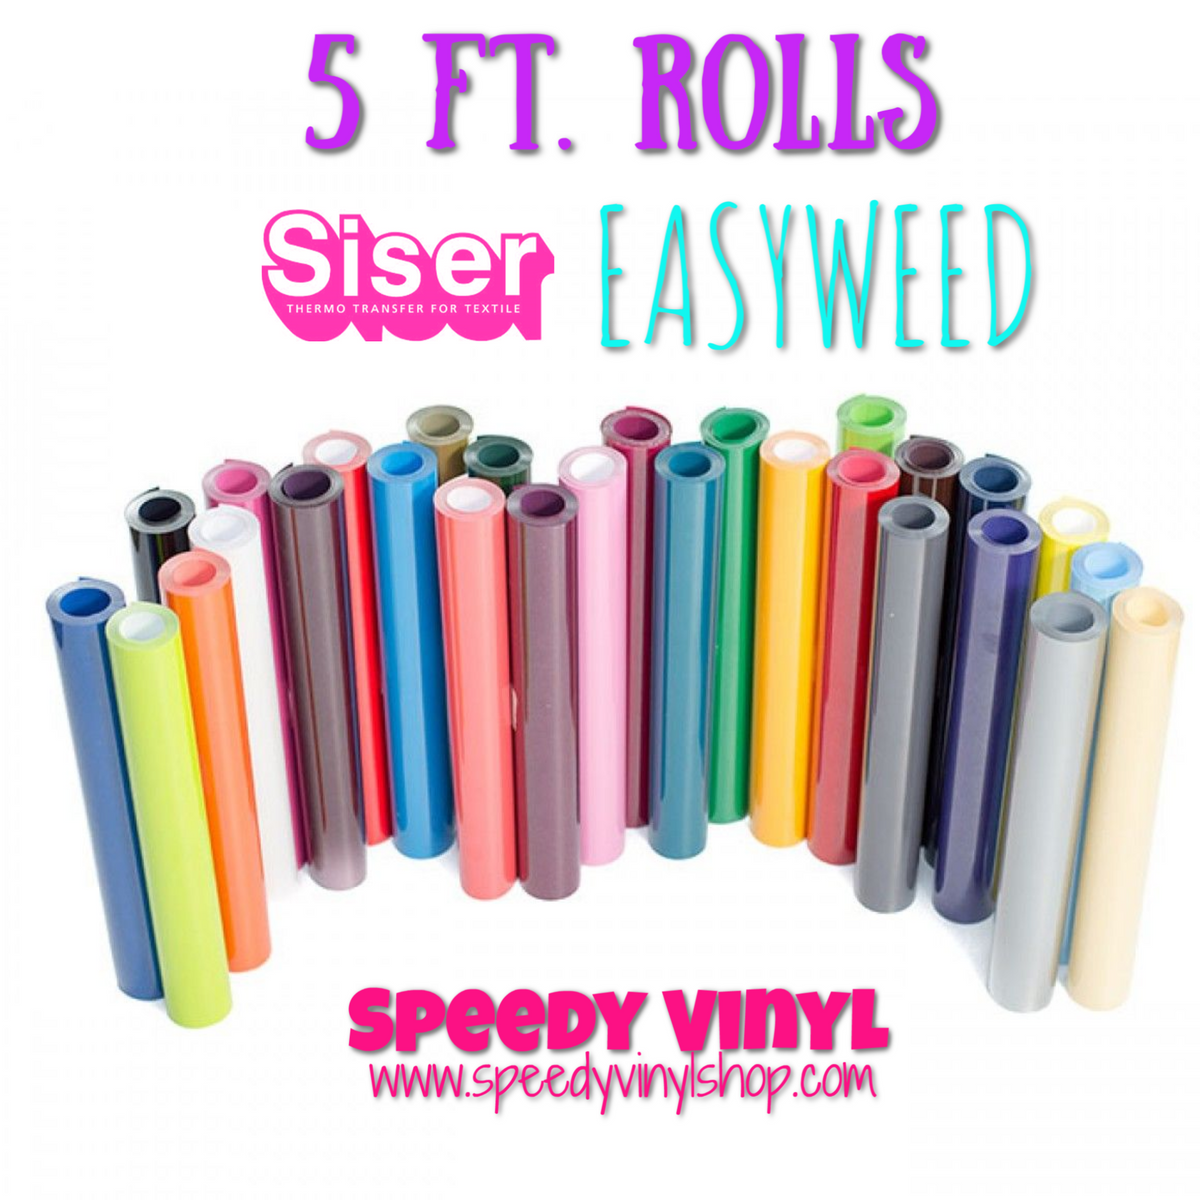 5 Ft. Rolls (12 x 5 Ft.) Siser EasyWeed HTV – Speedy Vinyl